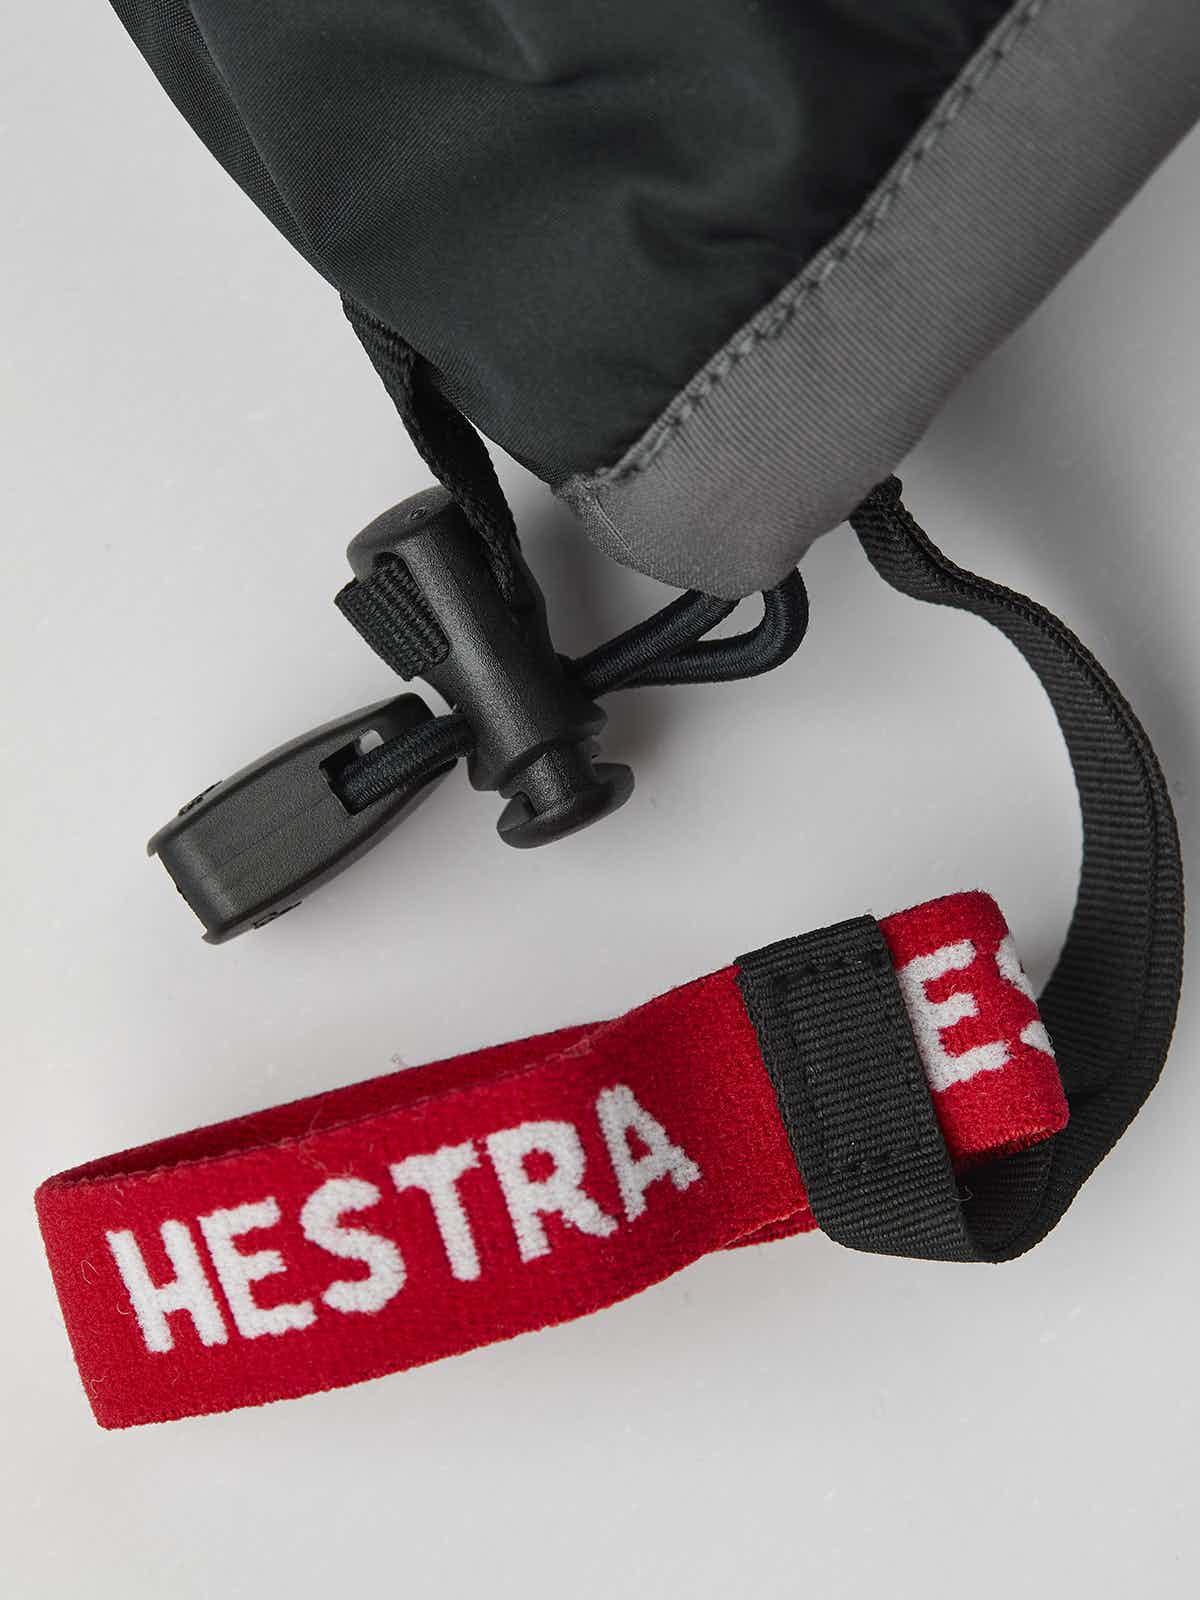 Hestra Gauntlet CZone JR MITT (Handskar) från Hestra. | TacNGear - Utrustning för polis och militär och outdoor.